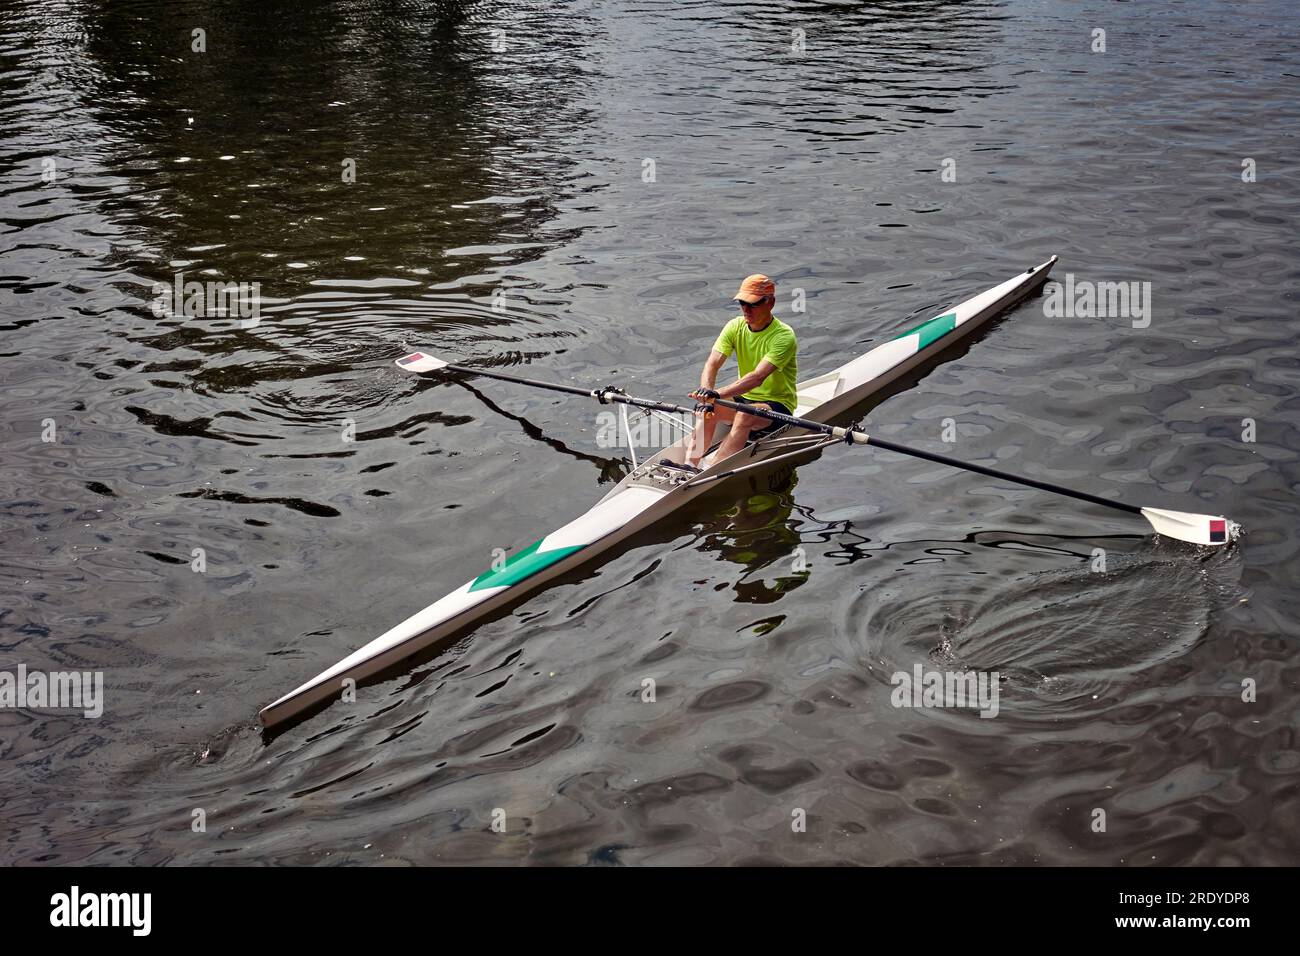 Un uomo che rema una sola barca sul fiume Avon a Stratford Upon Avon, Inghilterra, Regno Unito Foto Stock